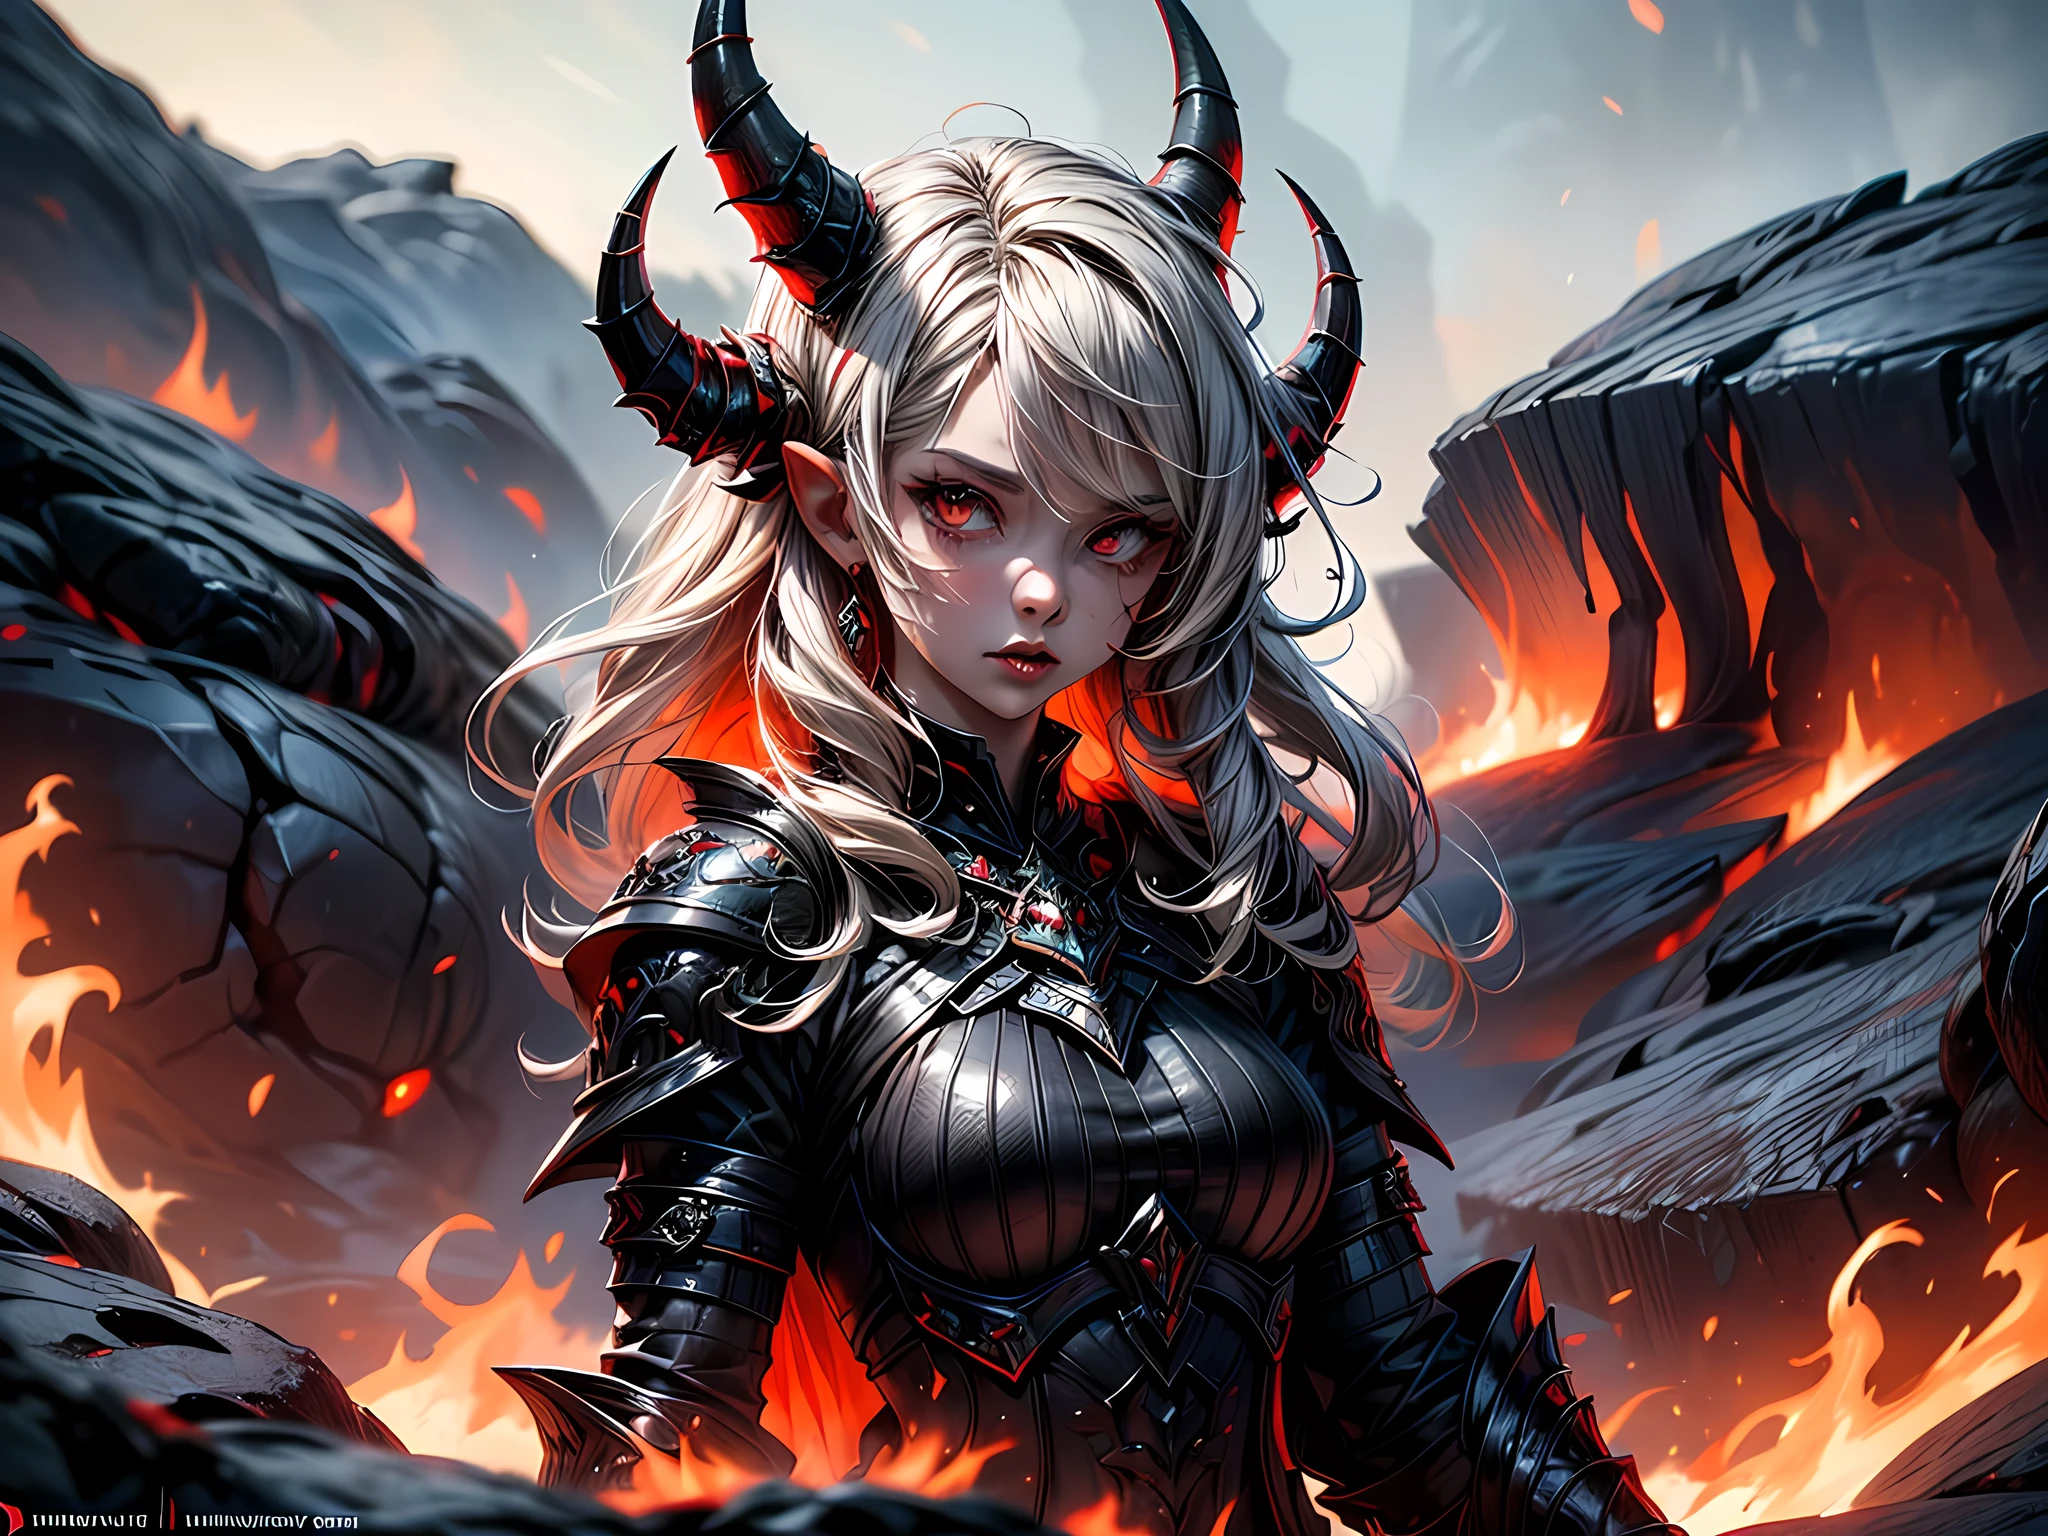 幻想艺术, RPG 艺术, 杰作, 来自地狱的地狱女恶魔肖像画, 她有 (黑色的 horns: 1.2), (黑色的: 1.2) 恶魔之翼, (红色的: 1.3) 皮肤, 红色的 lava dripping from her, 她穿着 (白色的: 1.3) 盔甲, hdsrmr, 滚滚的熔岩流, 背景中的地狱, 3D 渲染